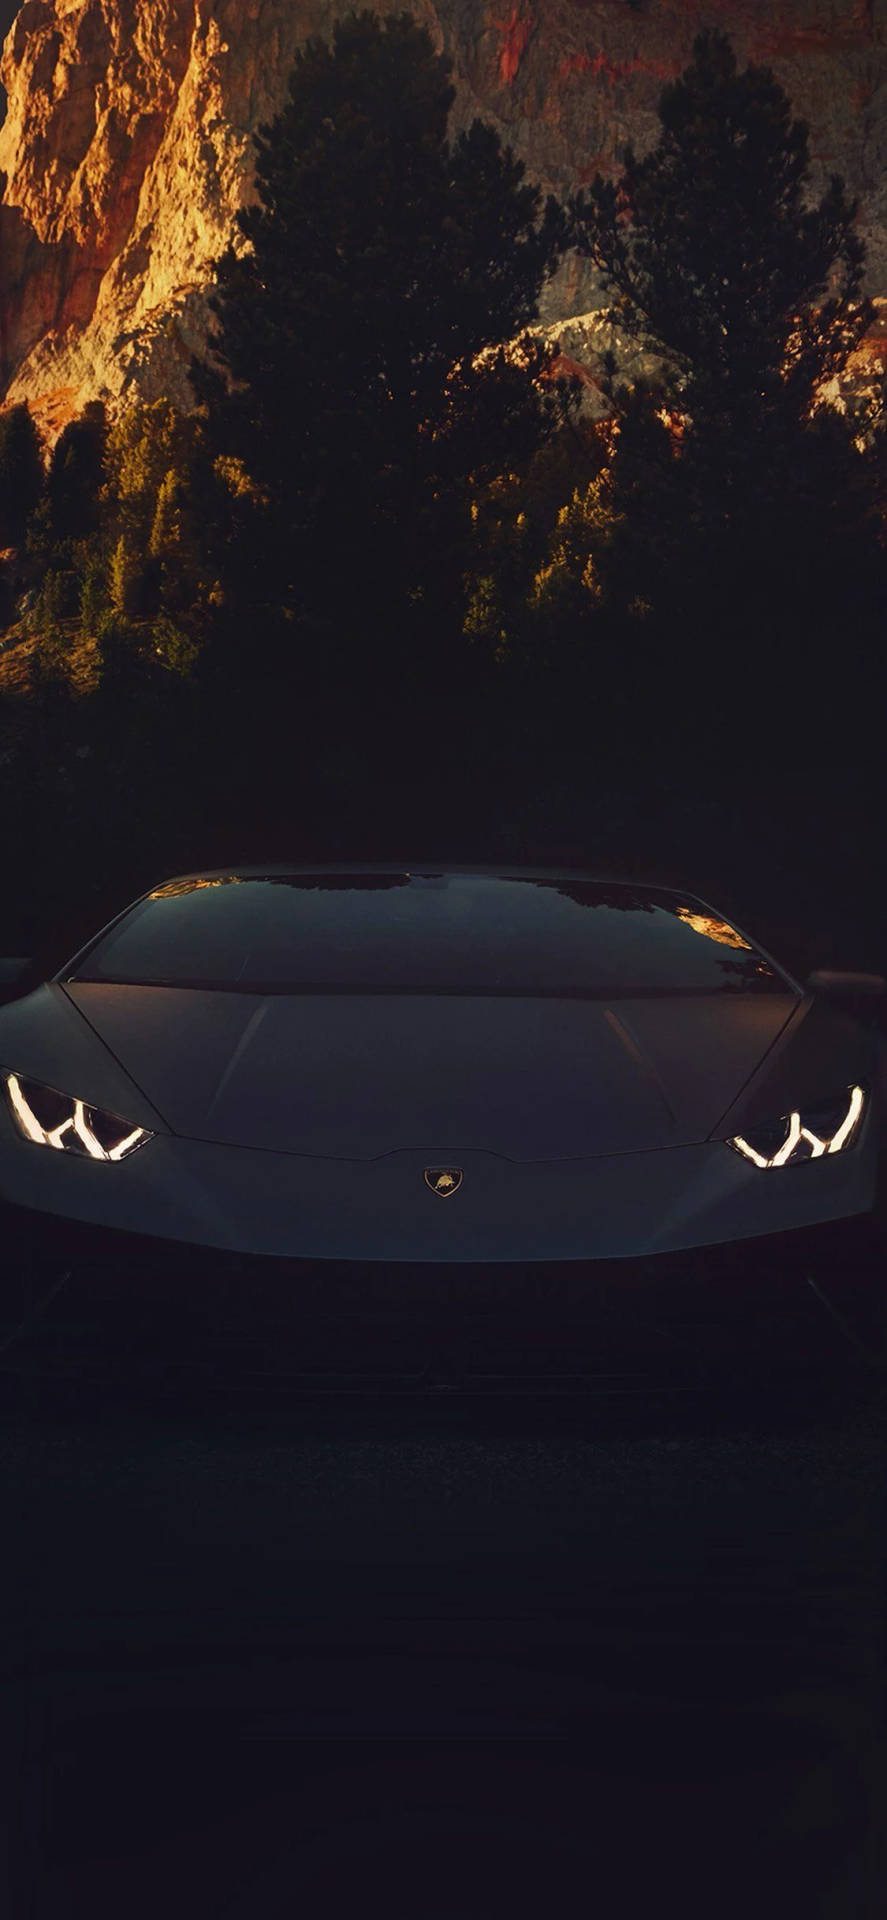 Sleek Lamborghini Aventador Iphone Car Wallpaper